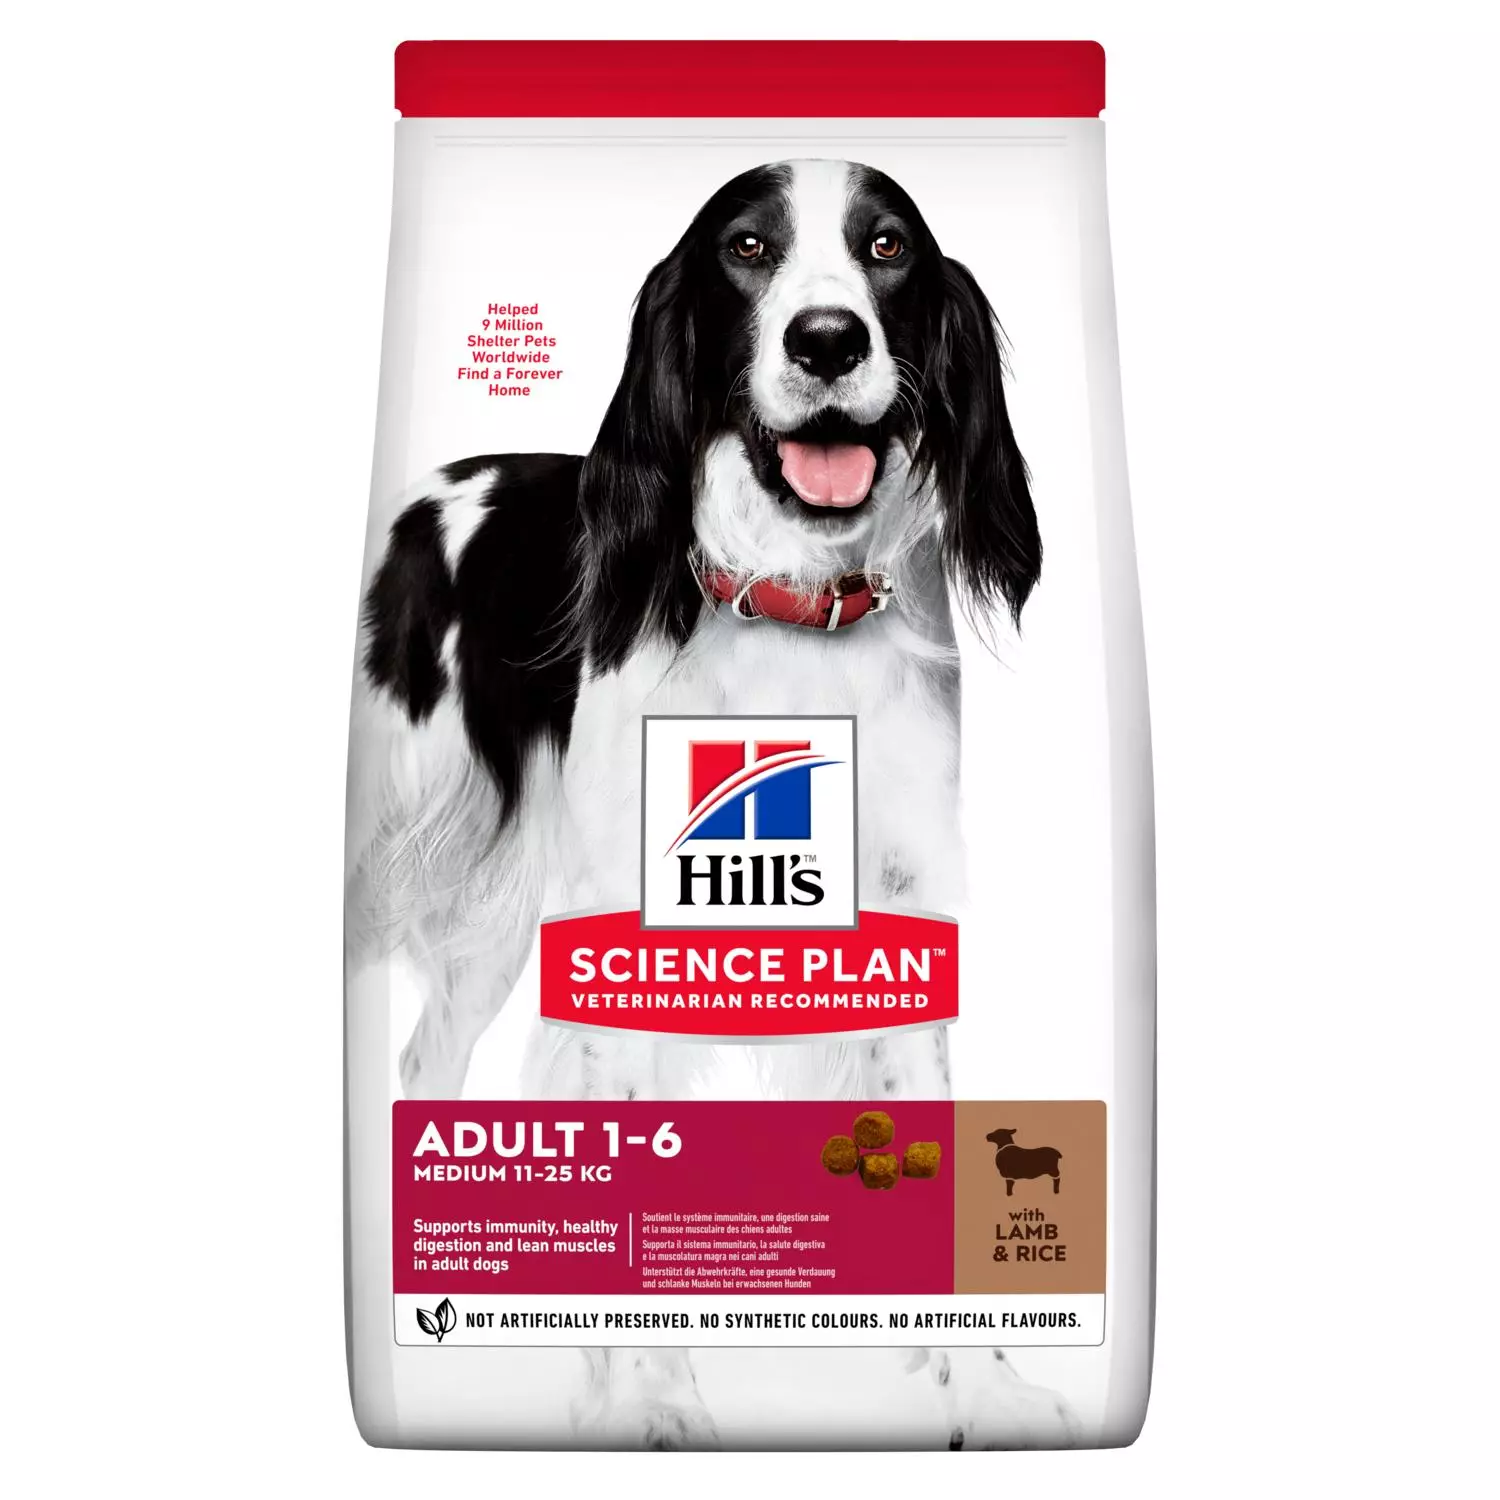 Alimentació de Hill: la composició de pinsos secs i humits. Són millors canin reial? País del fabricant. Aliments per a grans races de gossos amb xai i altres, revisions 22036_18